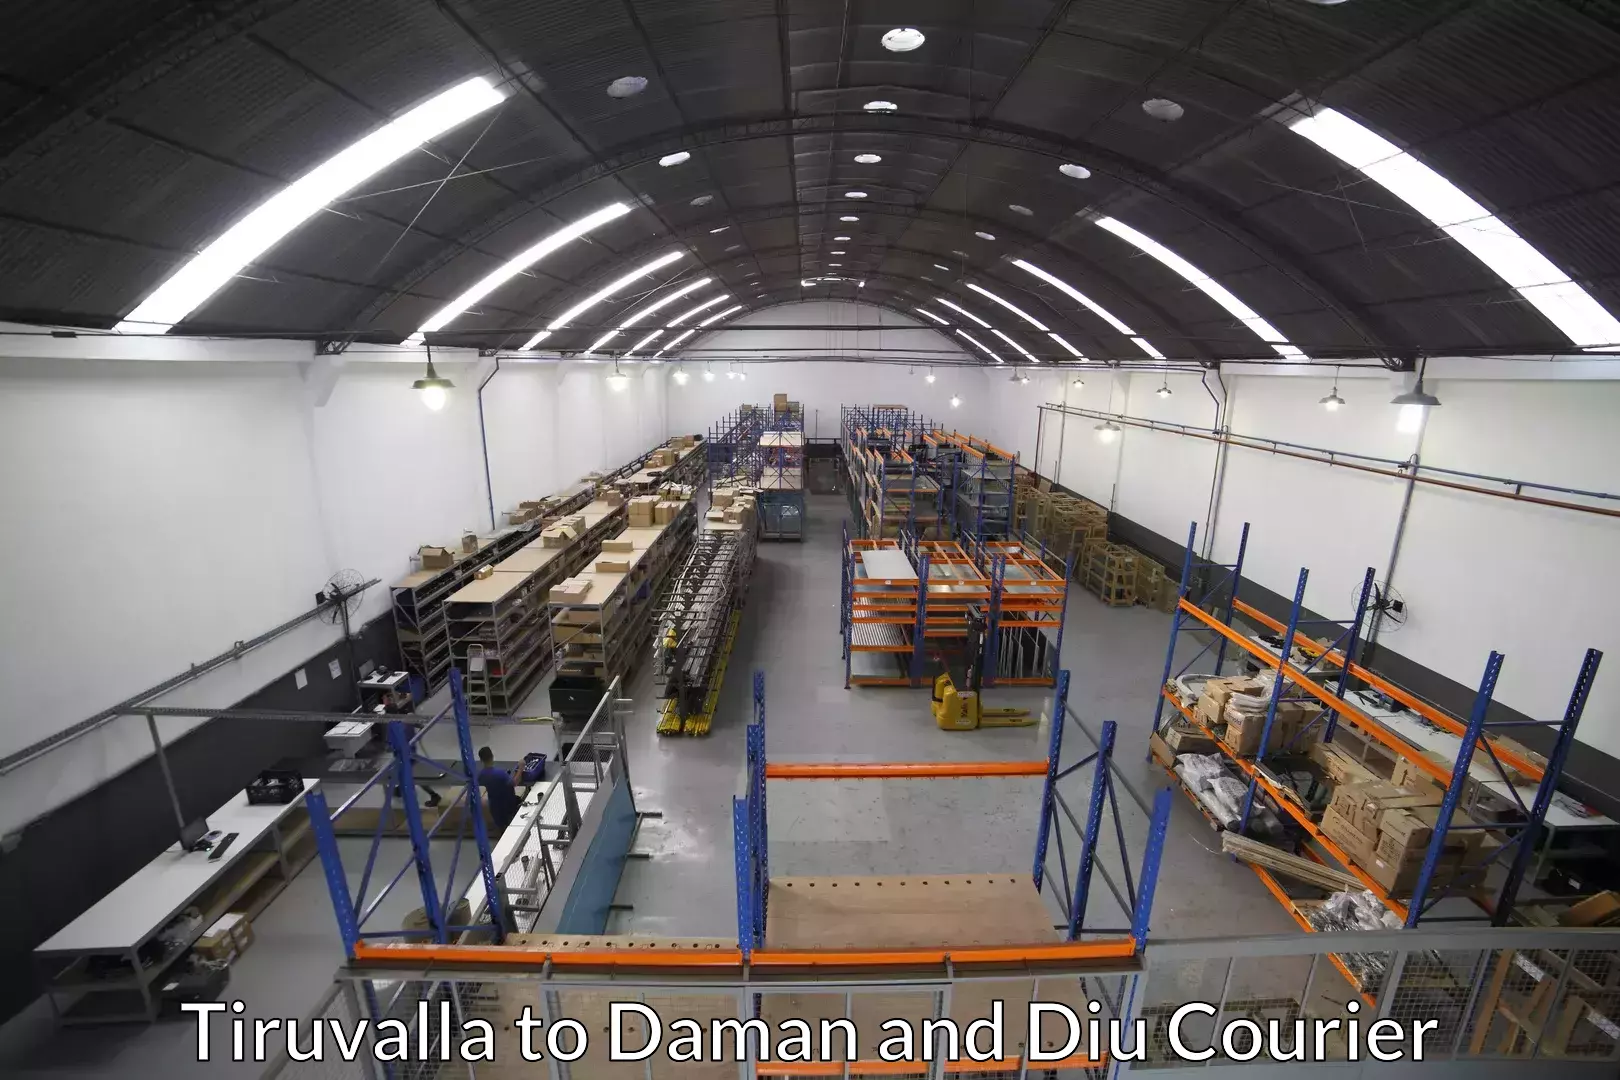 Furniture transport experts Tiruvalla to Daman and Diu